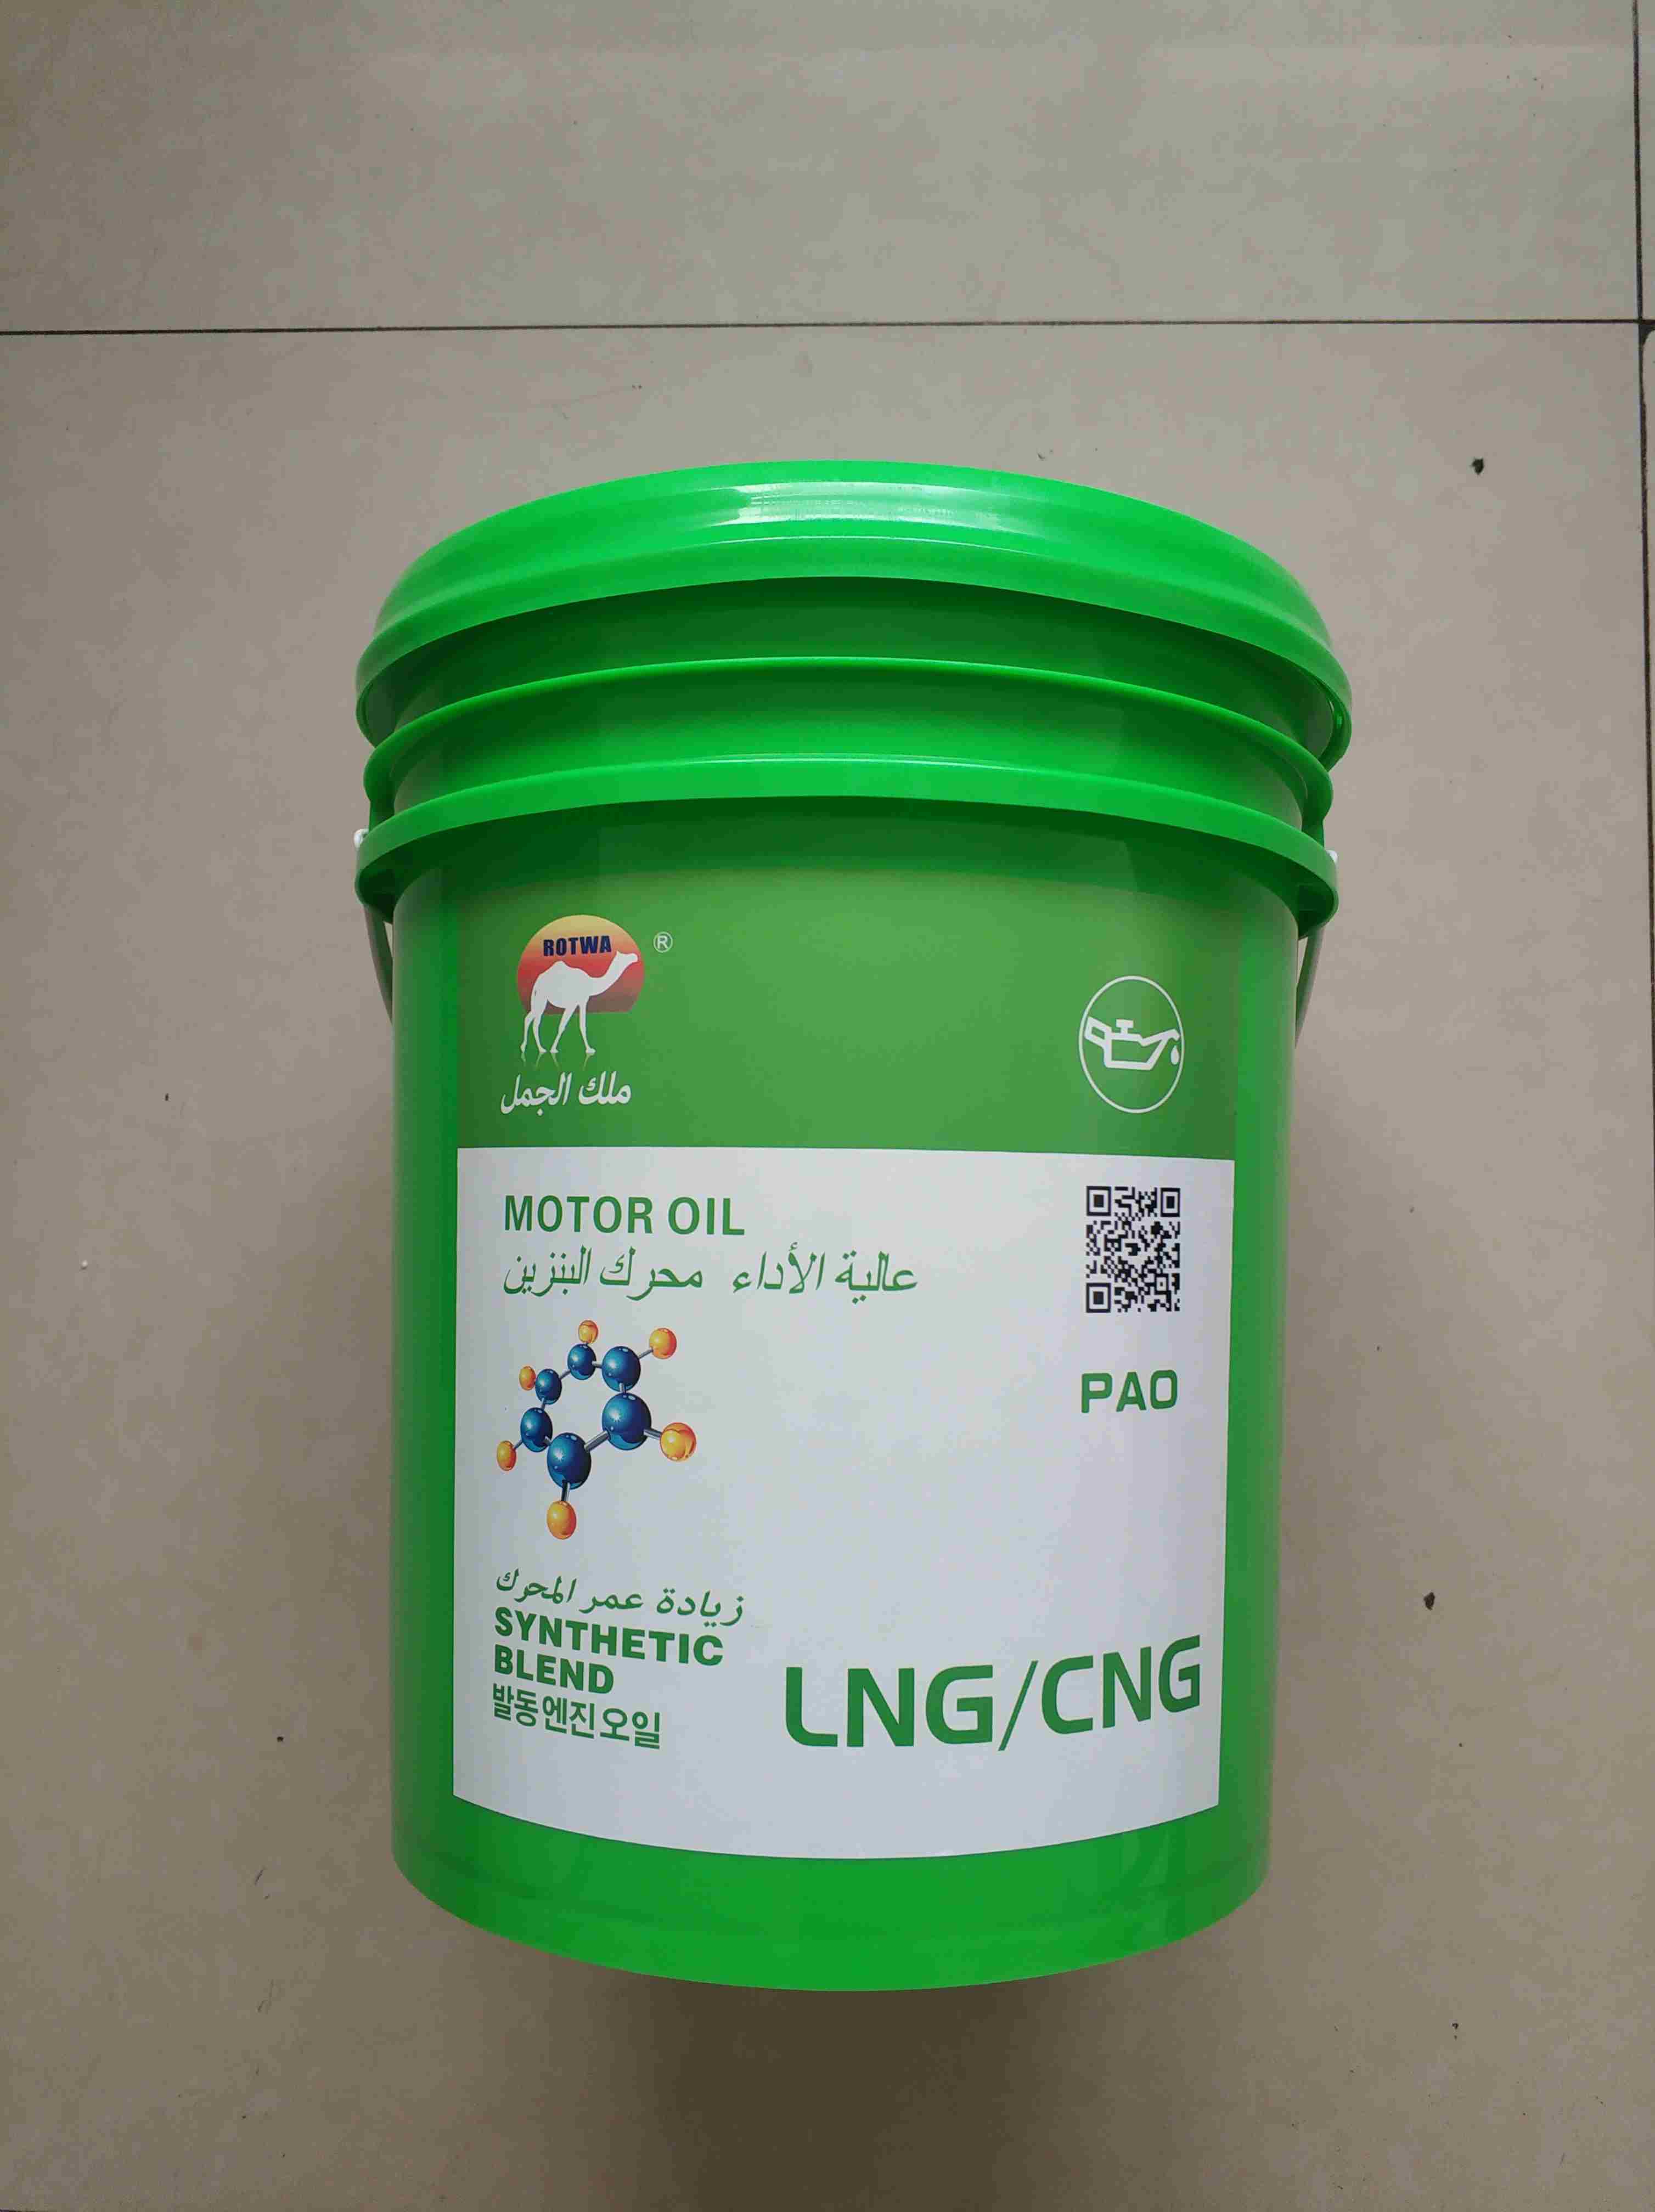 骆驼王燃气发动机油LNG/CNG车用润滑油厂家供应诚招代理商